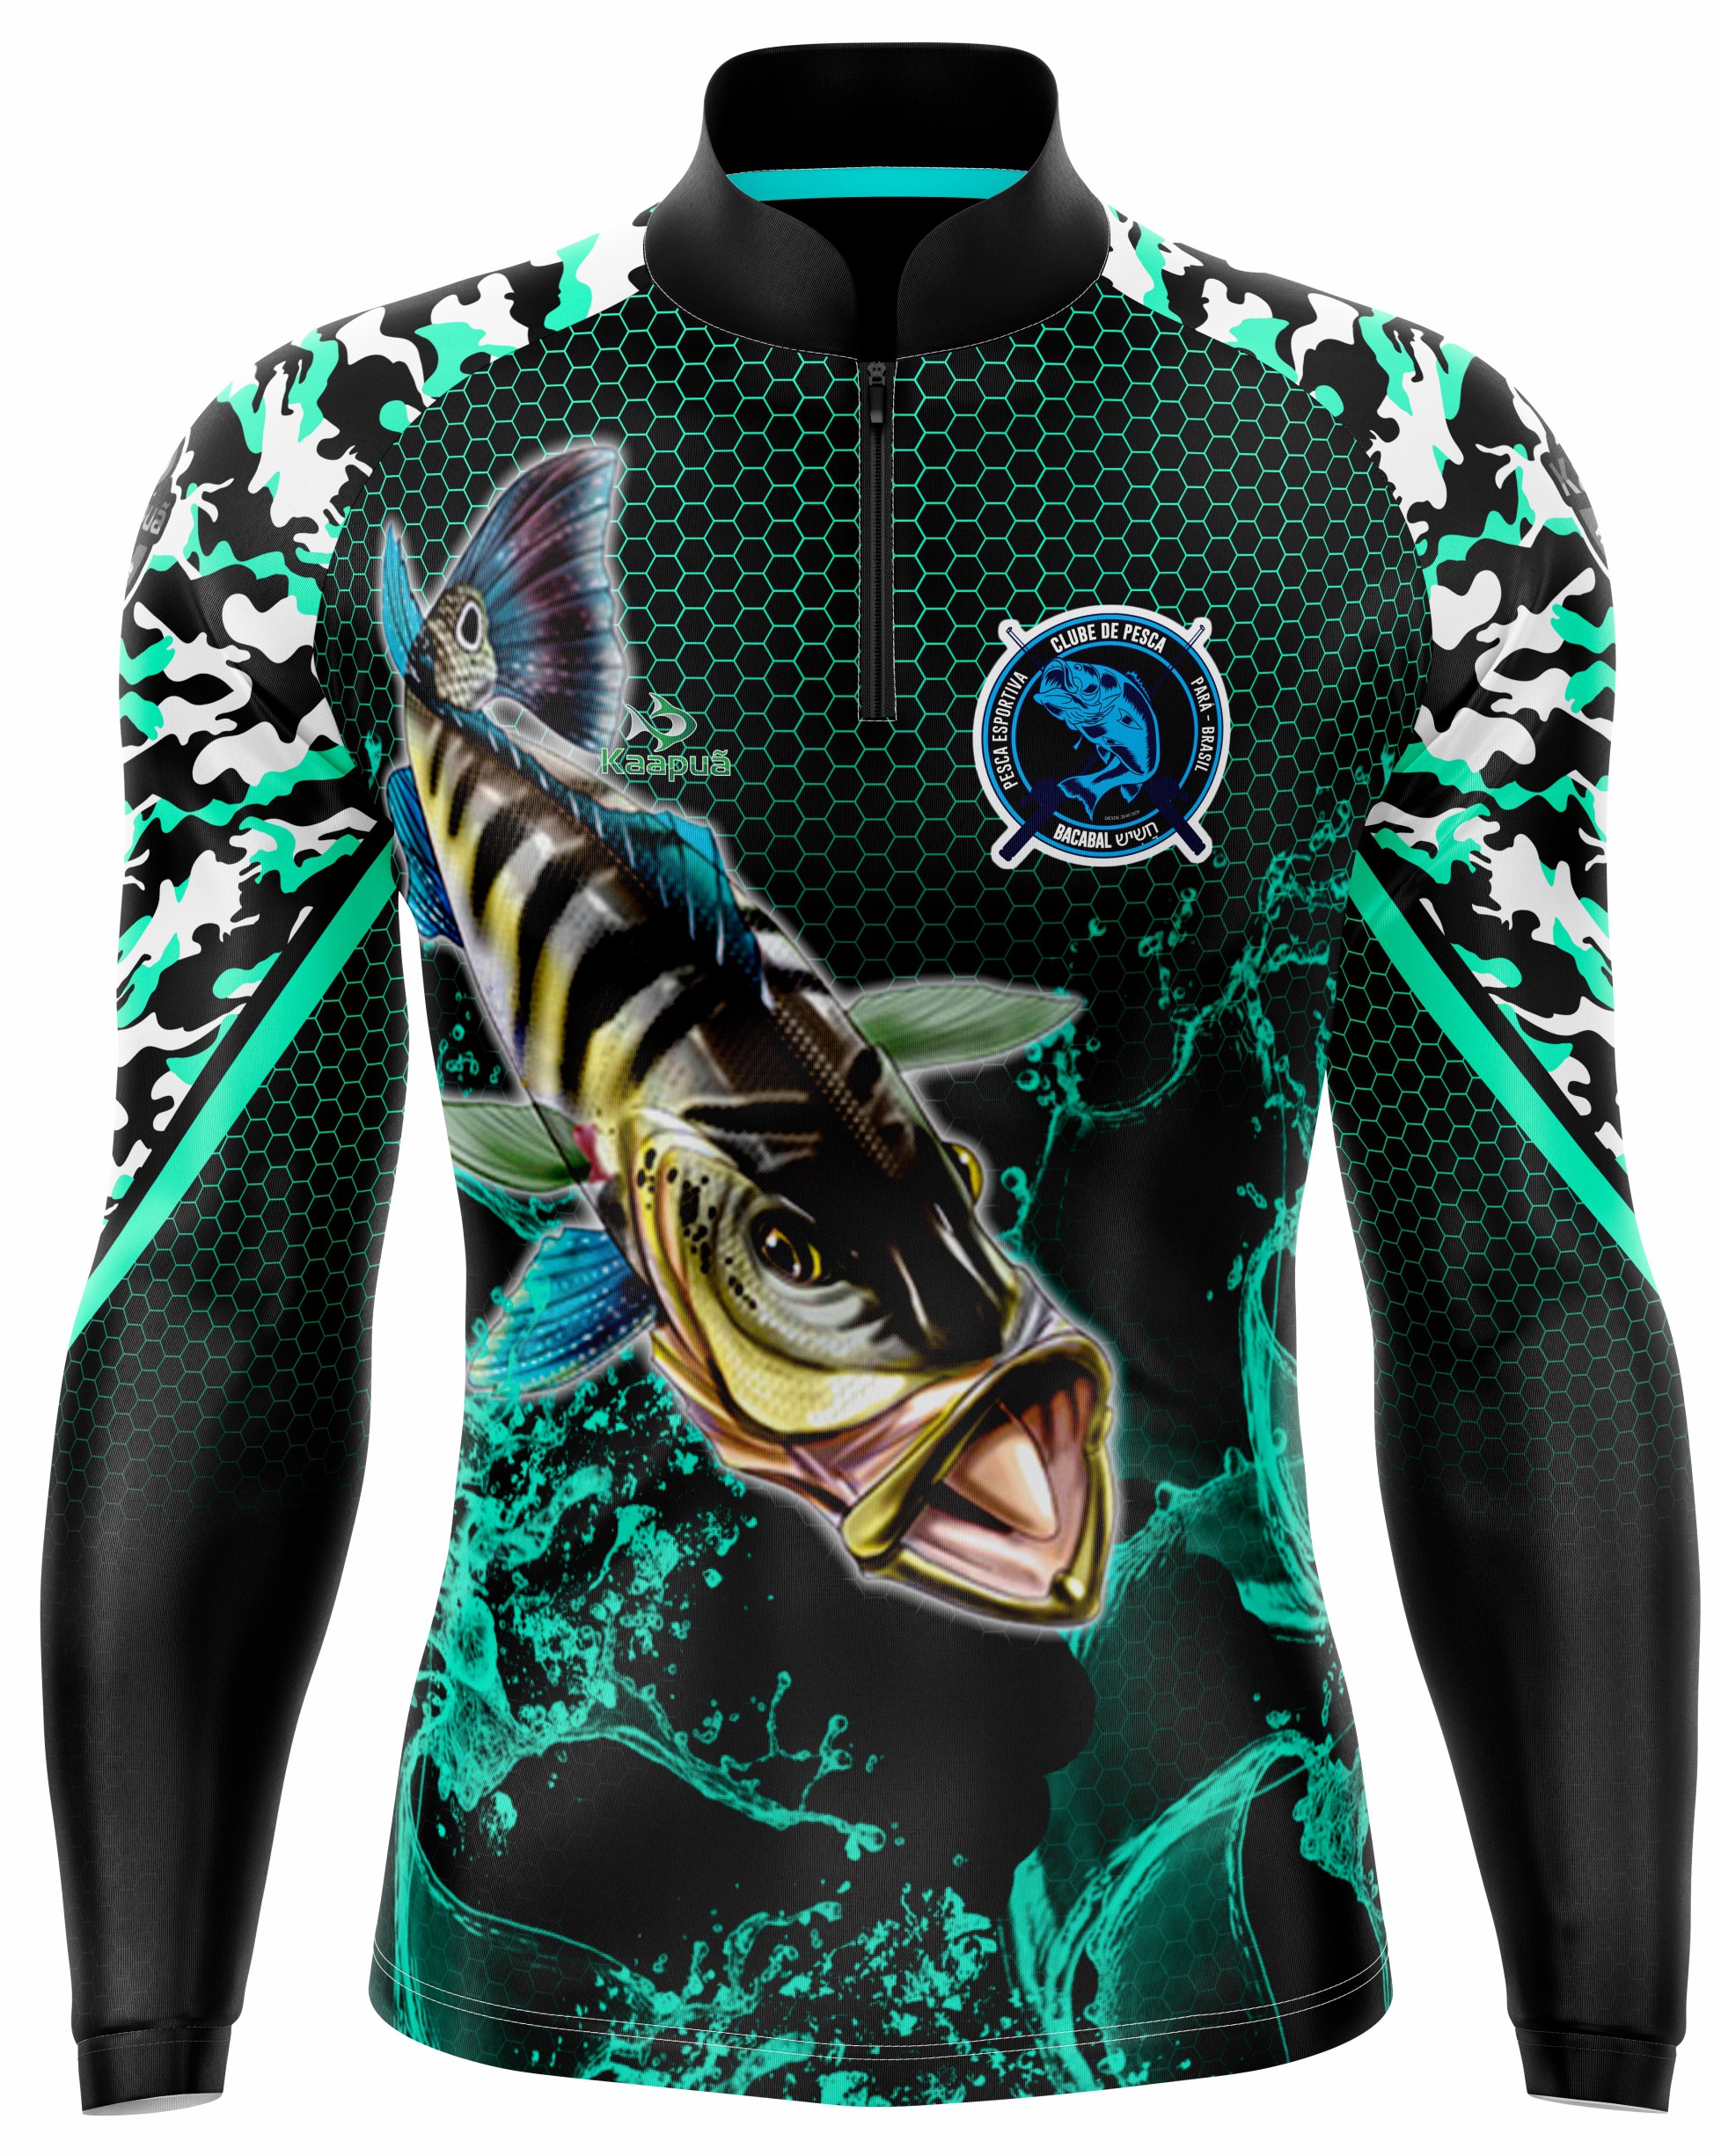 Camisa de Pesca Personalizada  Roupas de pescaria, Design de camisa polo,  Roupas de pesca